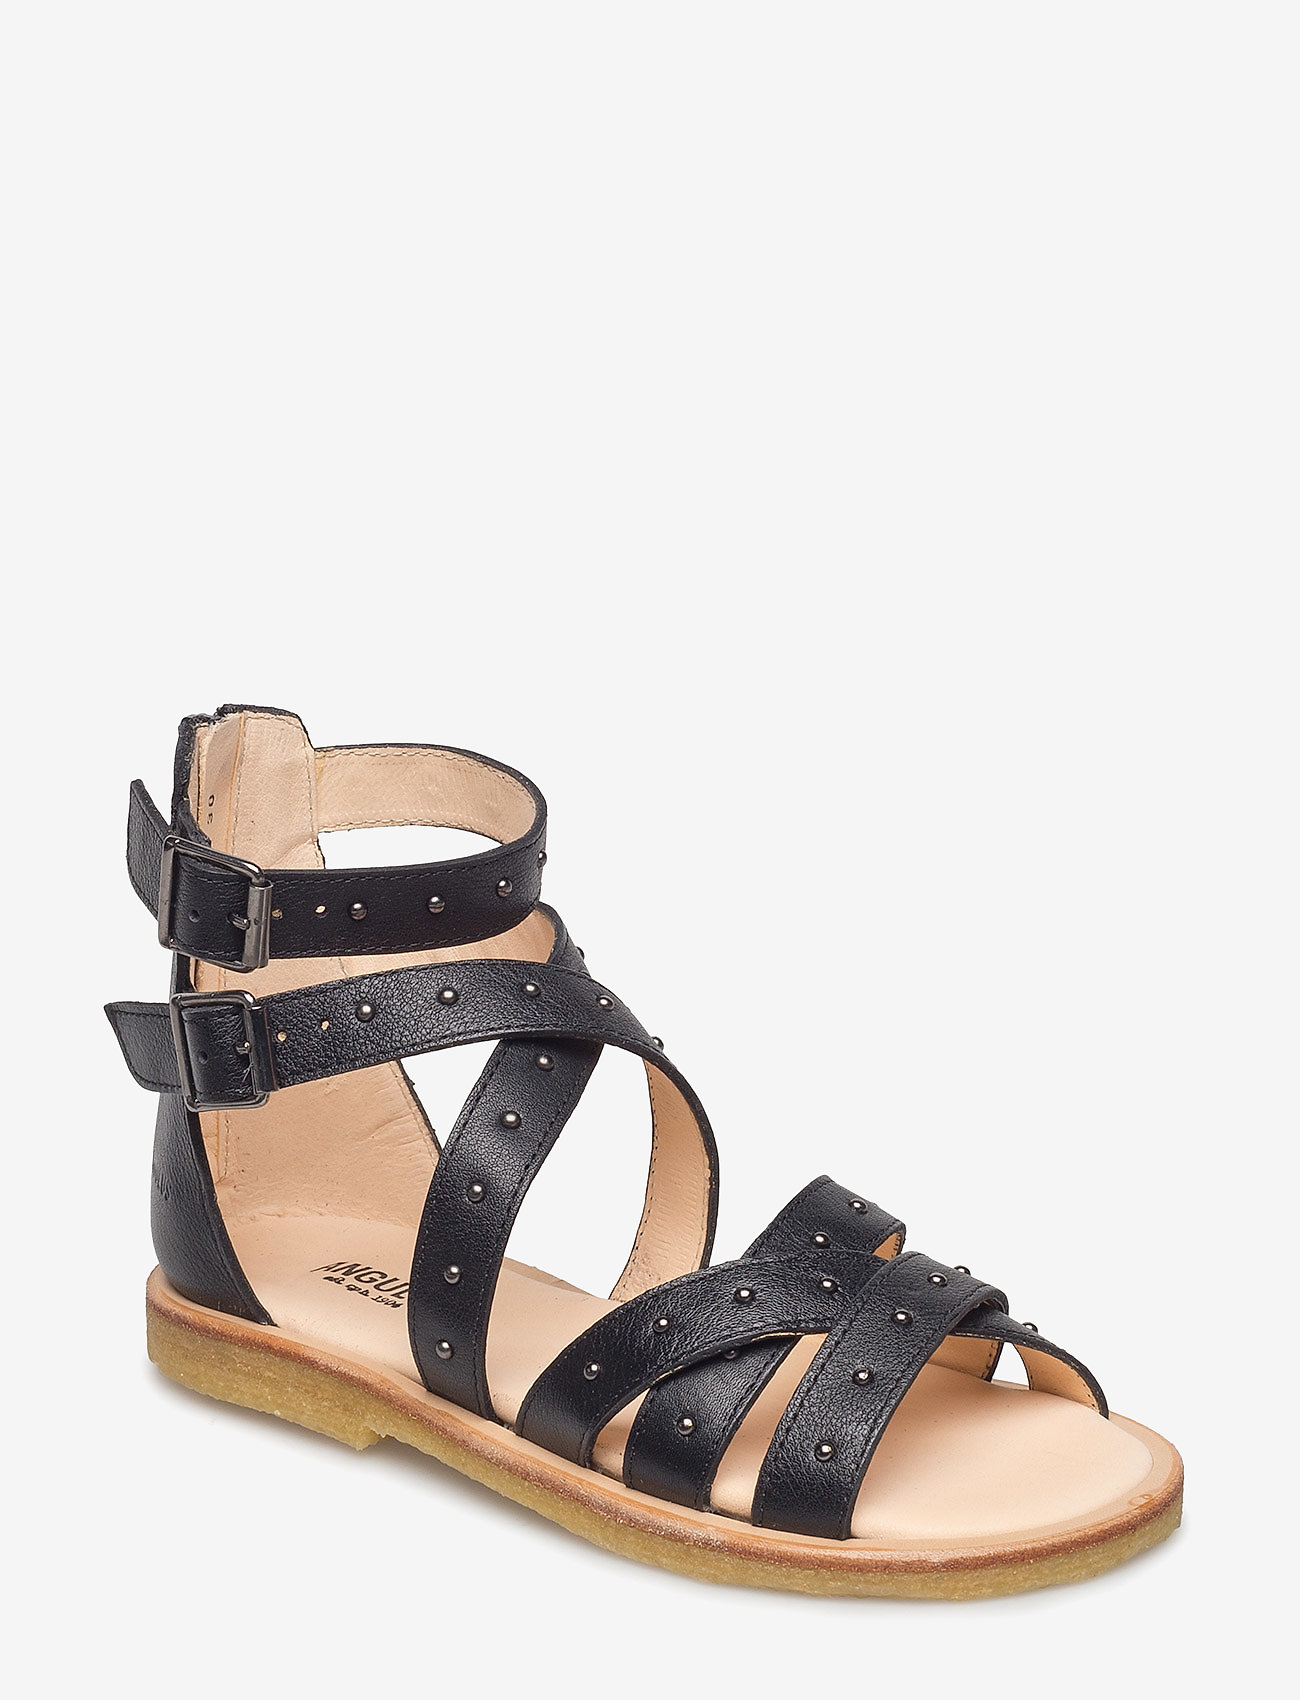 ANGULUS - Sandals - flat - open toe - clo - sandaler med rem - 1933 black - 0